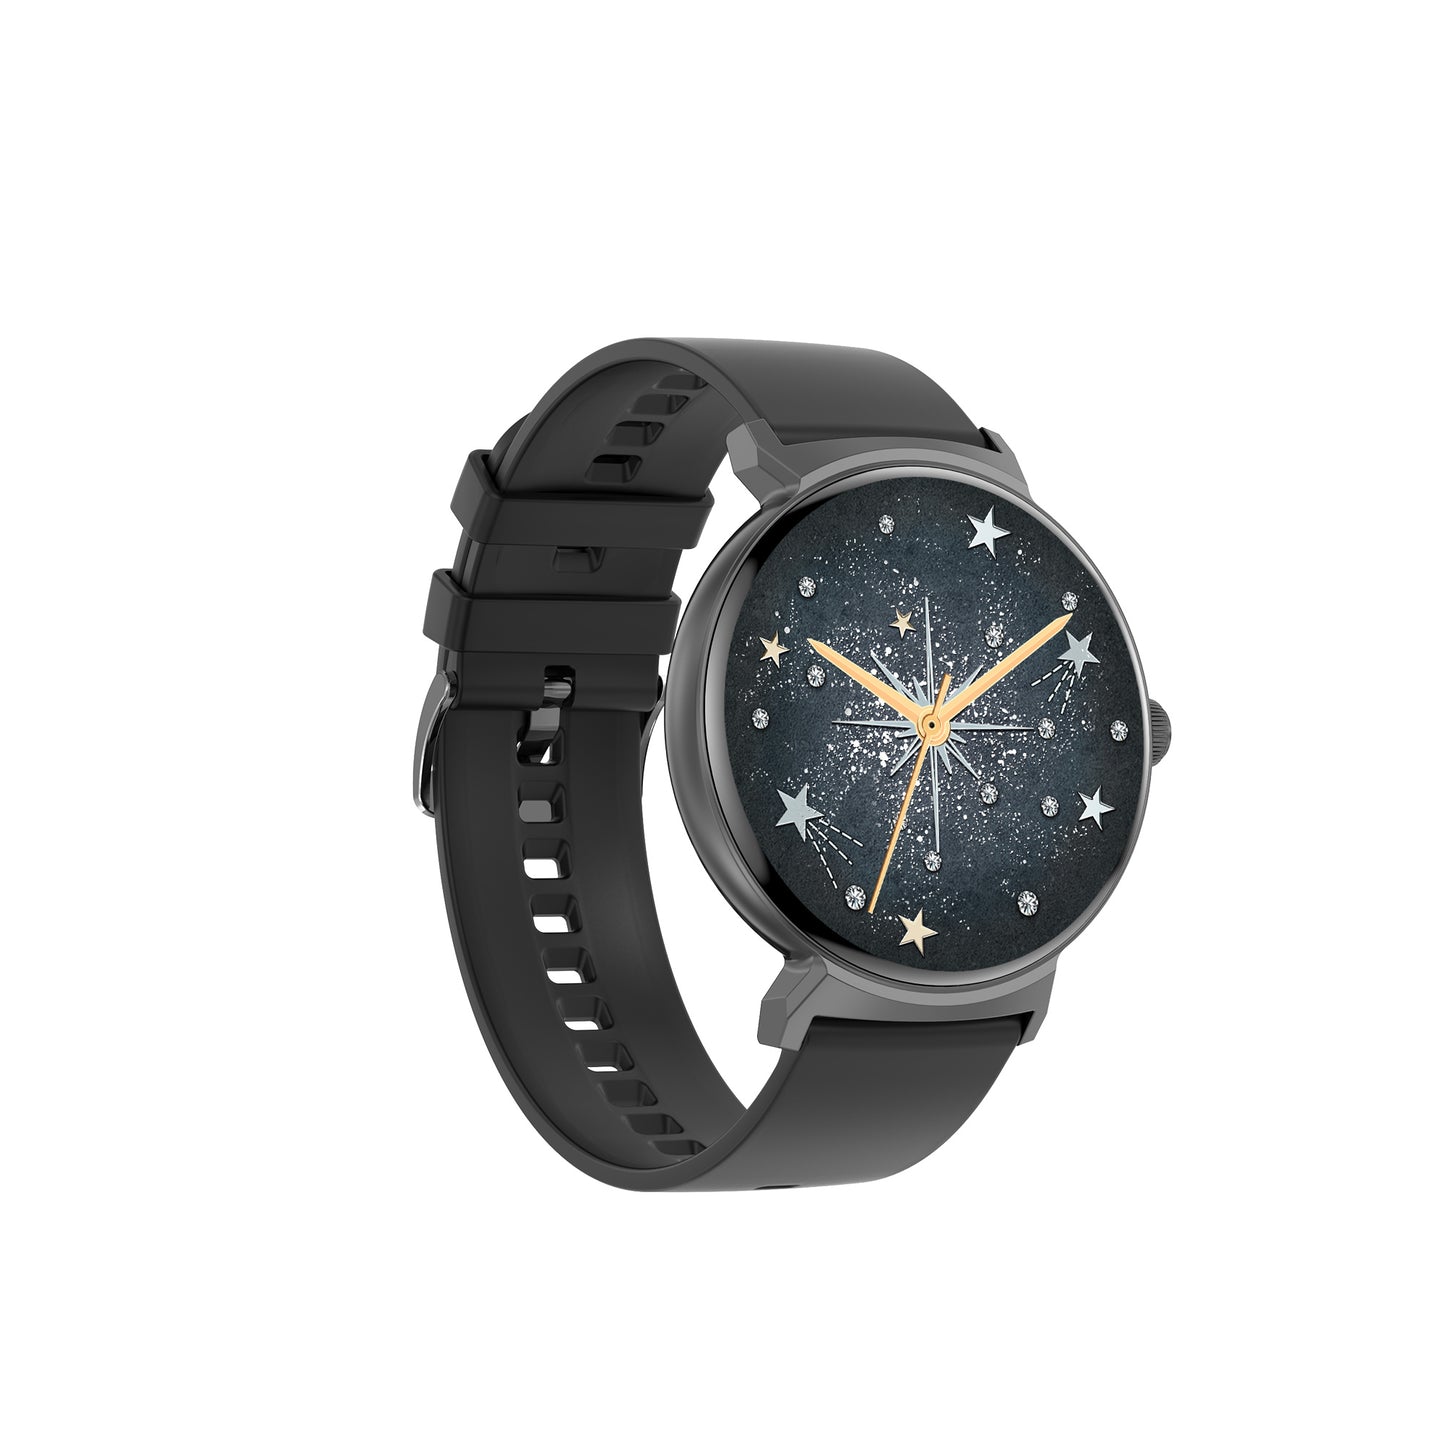 Smartwatch DT4 New